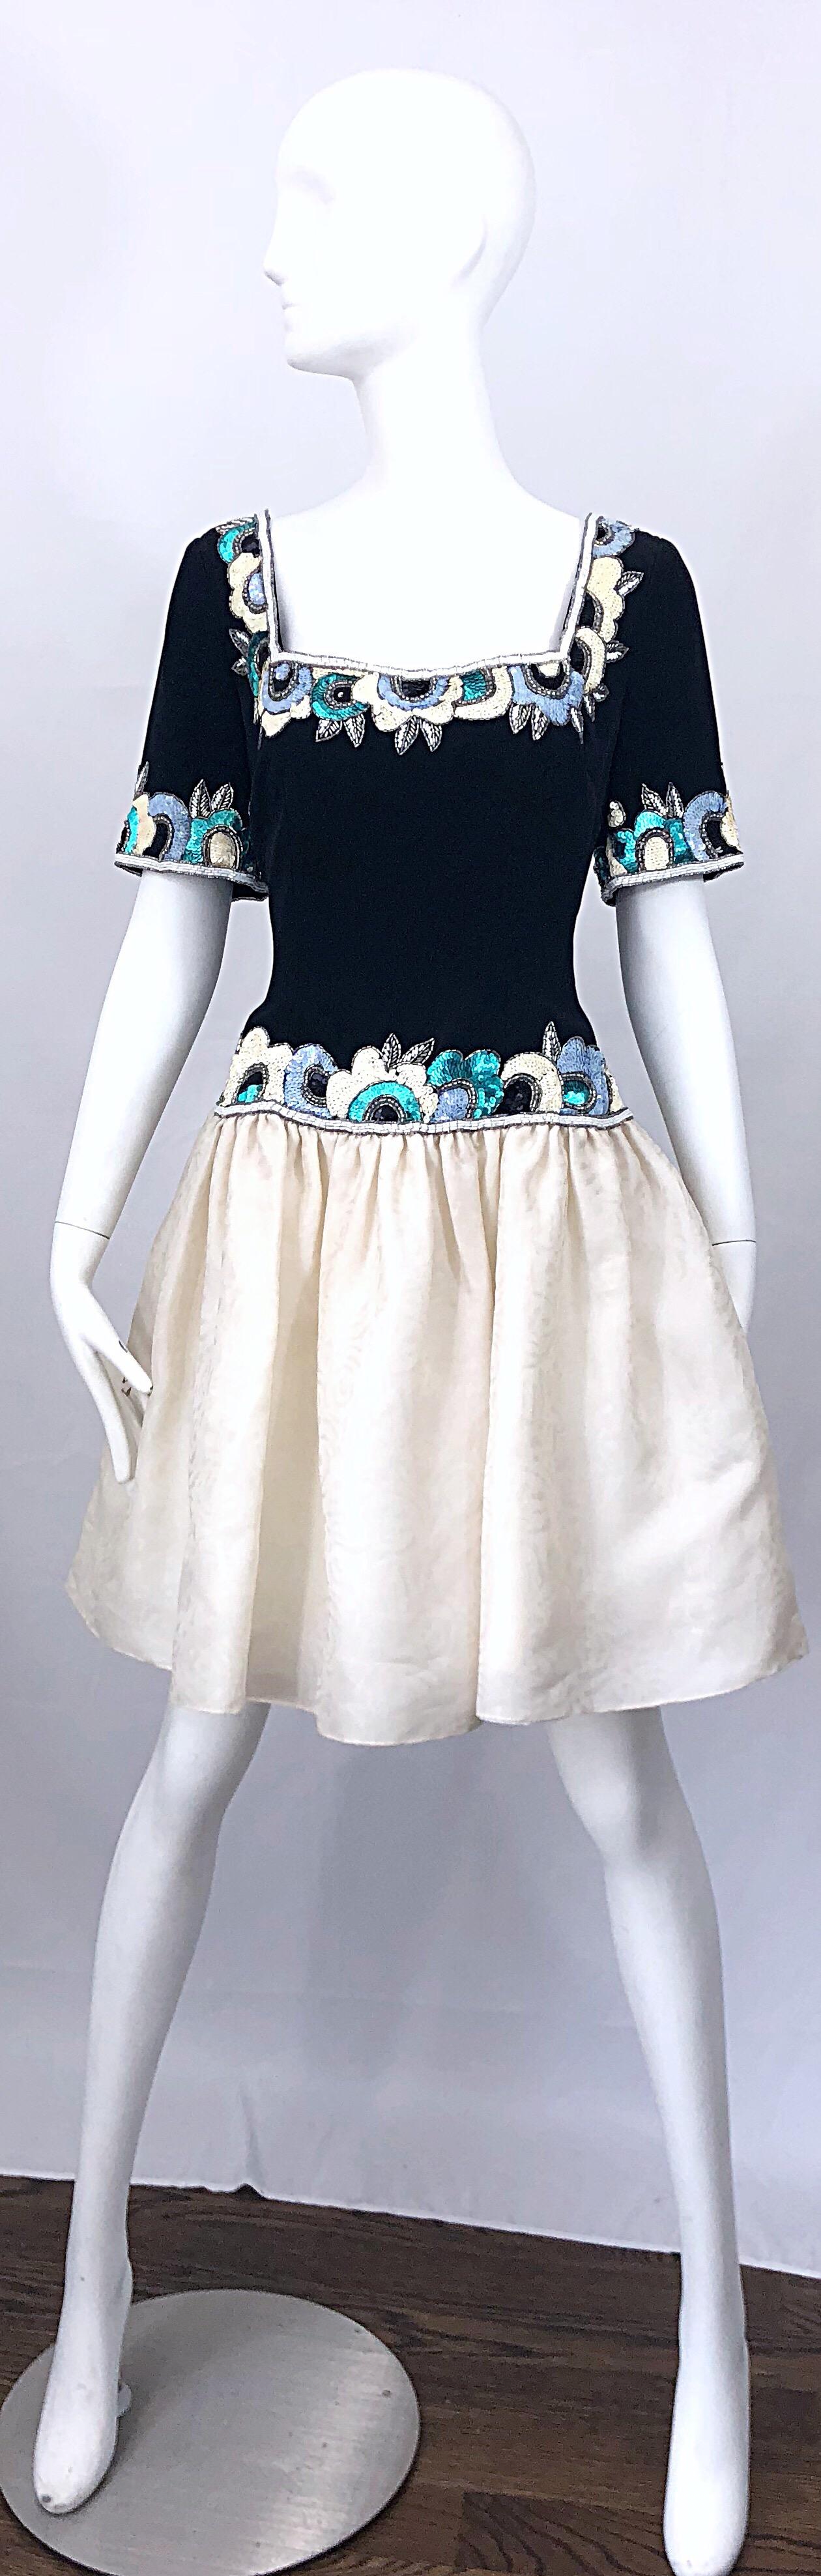 Wunderschönes schwarz-weiß-blaues Seidenkleid von BOB MACKIE aus den frühen 1990er Jahren mit Pailletten und Perlen besetzt! Das Kleid hat ein schwarzes Mieder und einen elfenbeinfarbenen Rock. Tausende von Pailletten und Perlen zieren den Hals, die